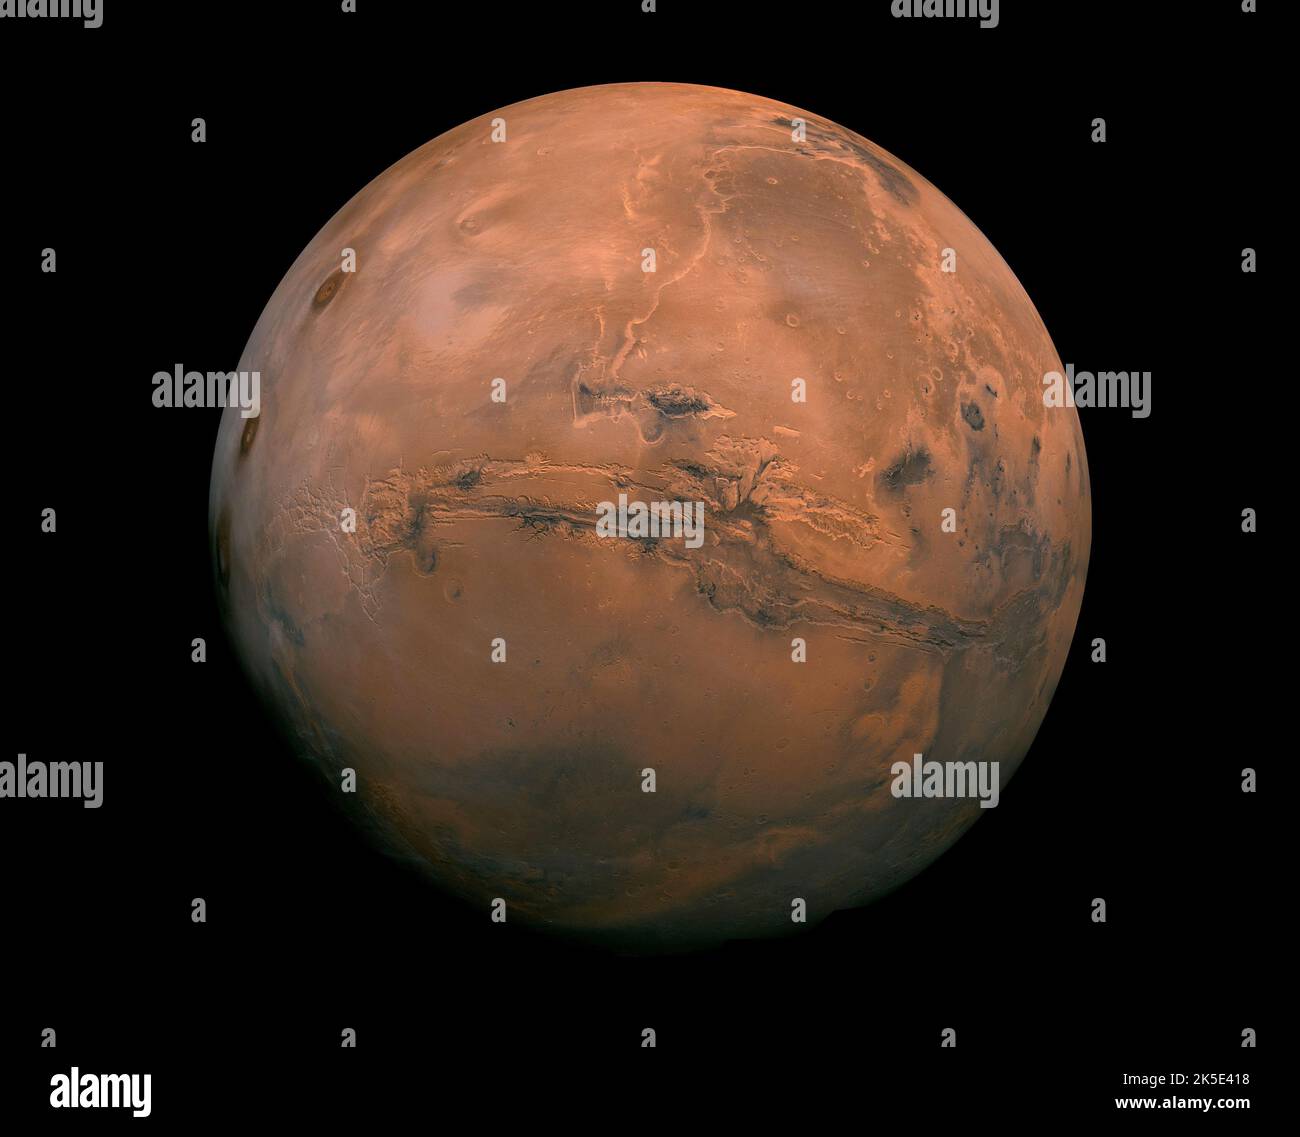 Il pianeta Marte. Un Mosaico della NASA immagini di Marte che mostra l'emisfero di Marte Valles Marineris proiettato in prospettiva puntifera, una vista simile a quella che si vedrebbe da una navicella spaziale. La distanza dello spettatore è prevista a circa 2.500 chilometri dalla superficie di Marte. Immagine composta da oltre 100 immagini vichinghe Orbiter di Marte. Versione ottimizzata di un'immagine NASA originale. Credito: NASA, Foto Stock